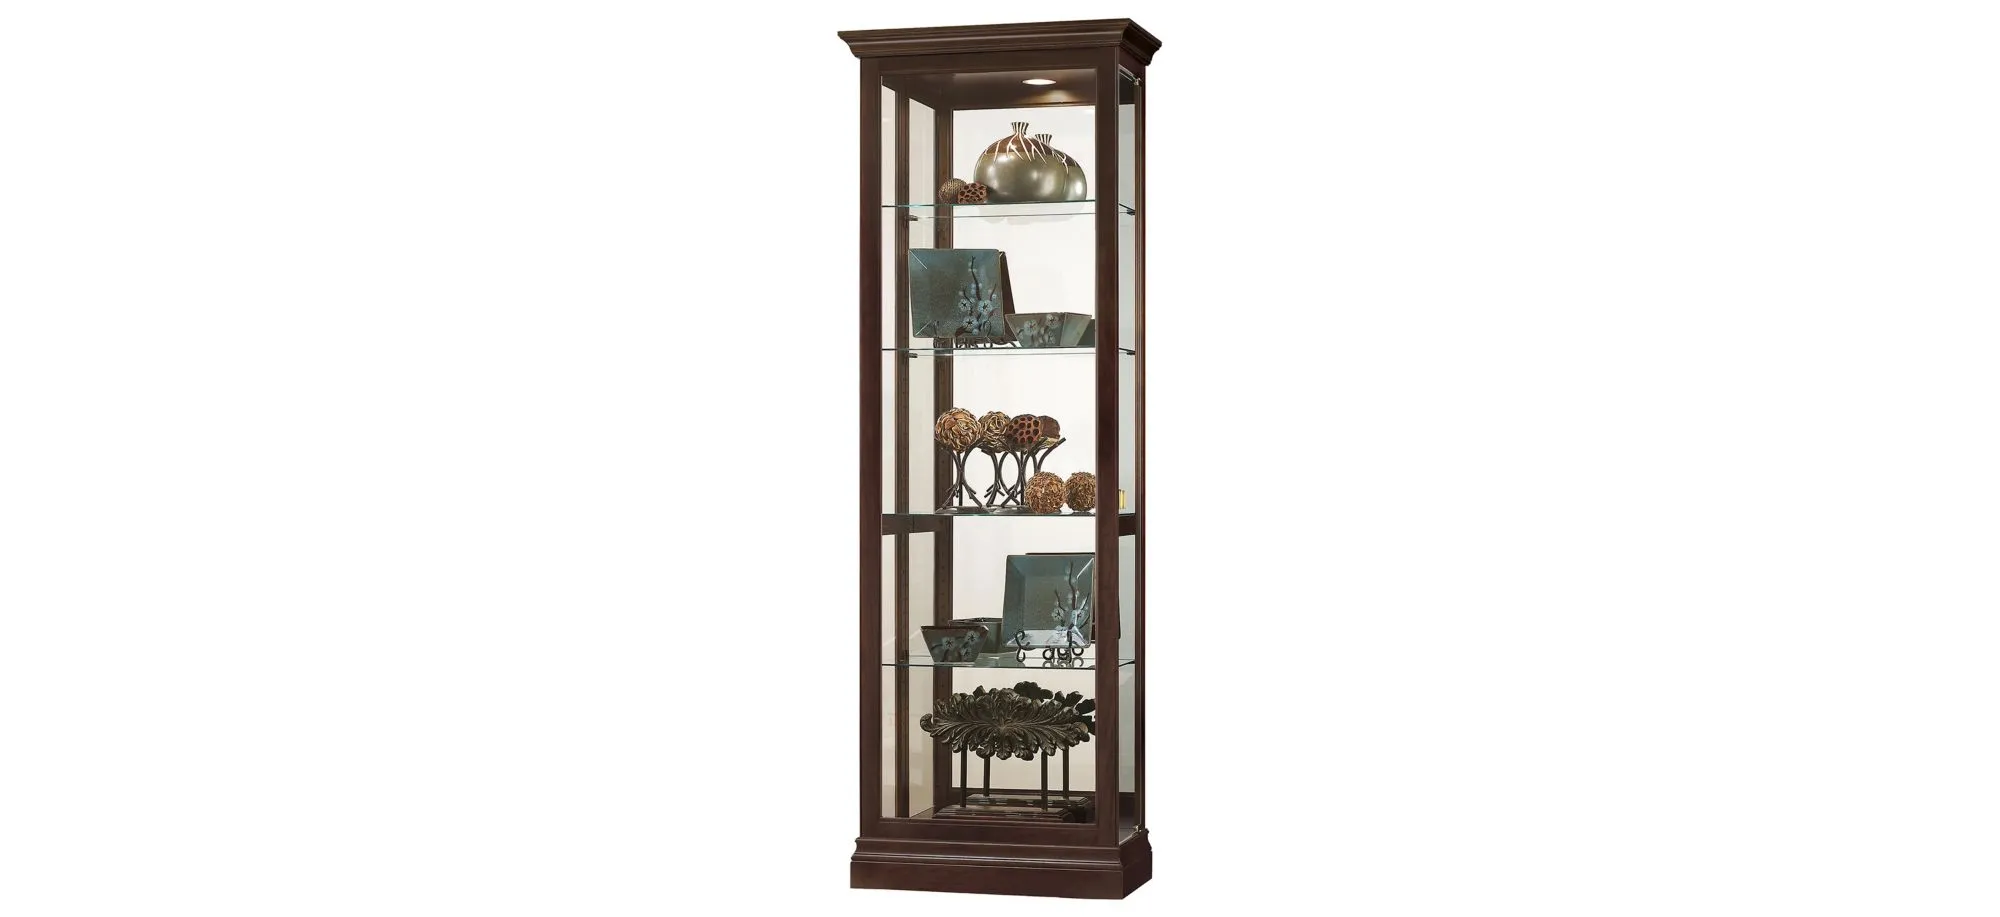 Brantley Curio Cabinet in Espresso by Howard Miller Clock